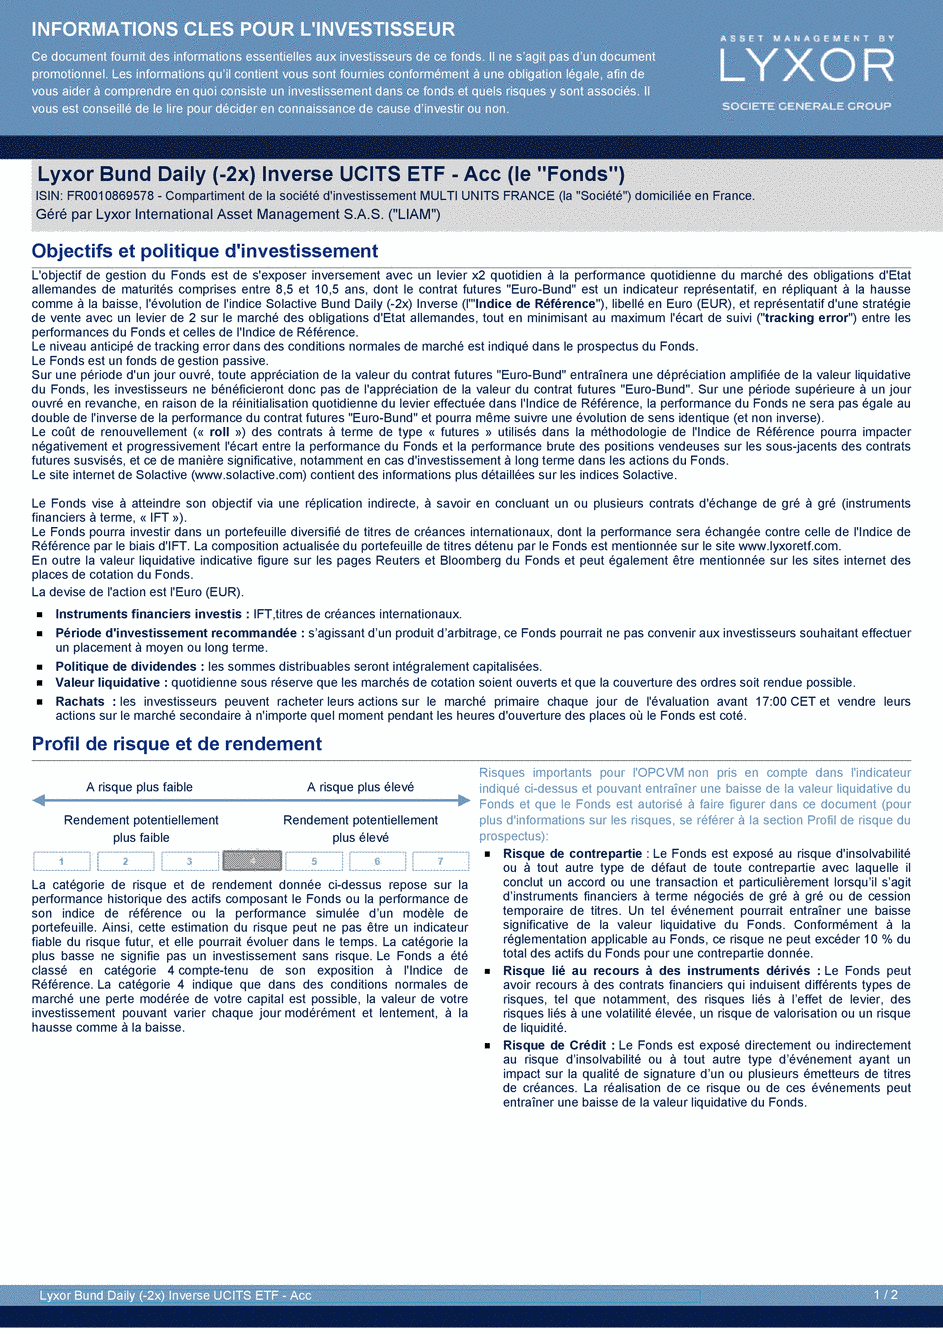 DICI Lyxor Bund Daily (-2x) Inverse UCITS ETF - Acc - 21/06/2019 - Français